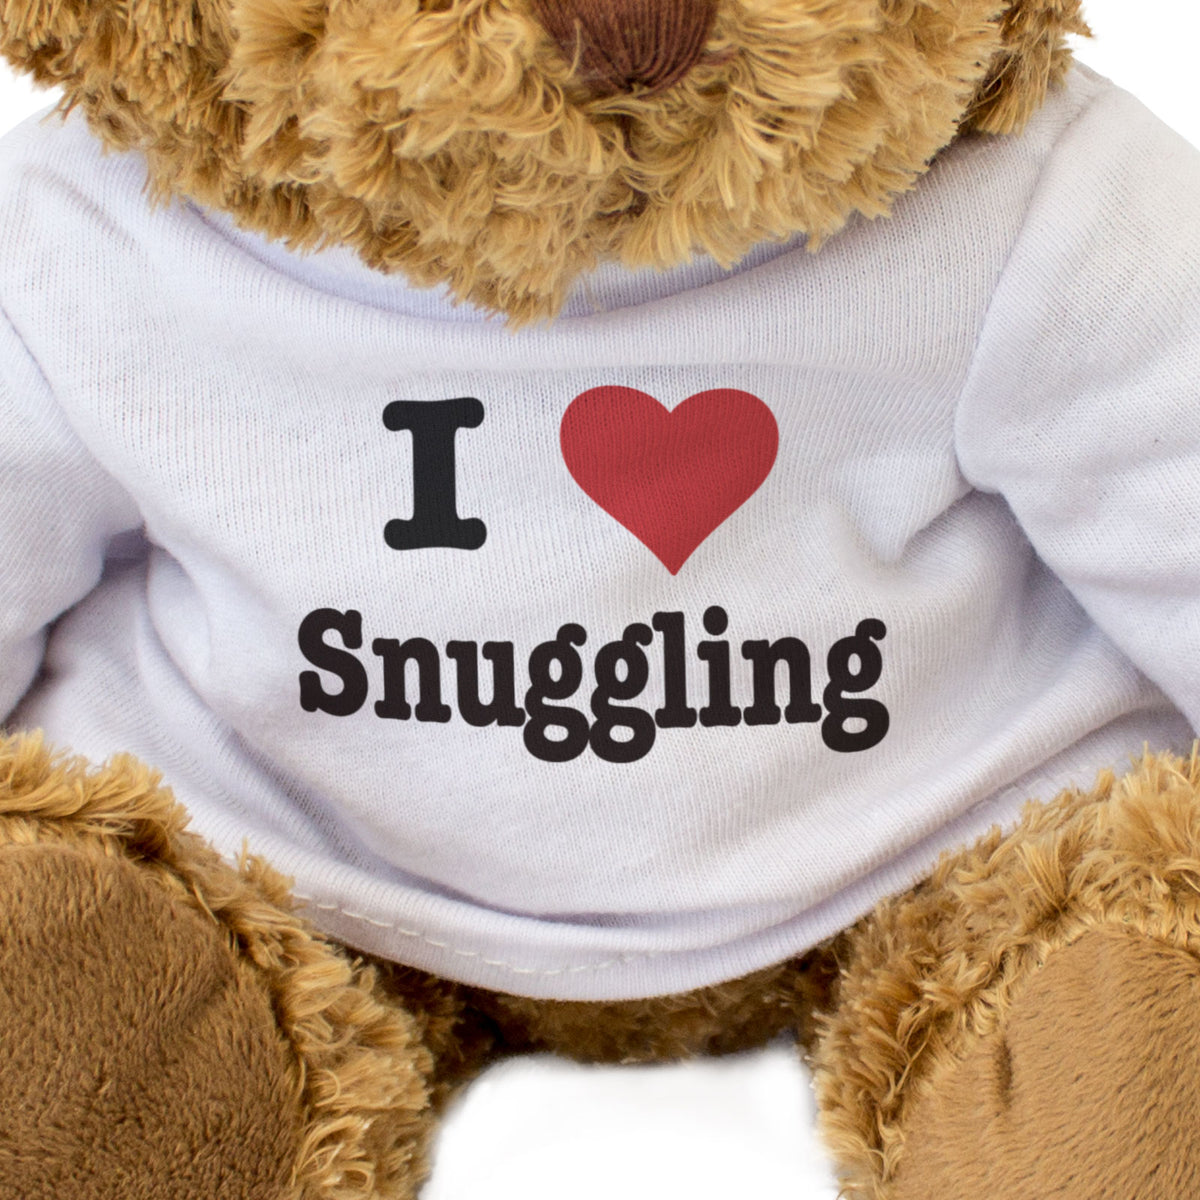 I Love Snuggling - Teddy Bear